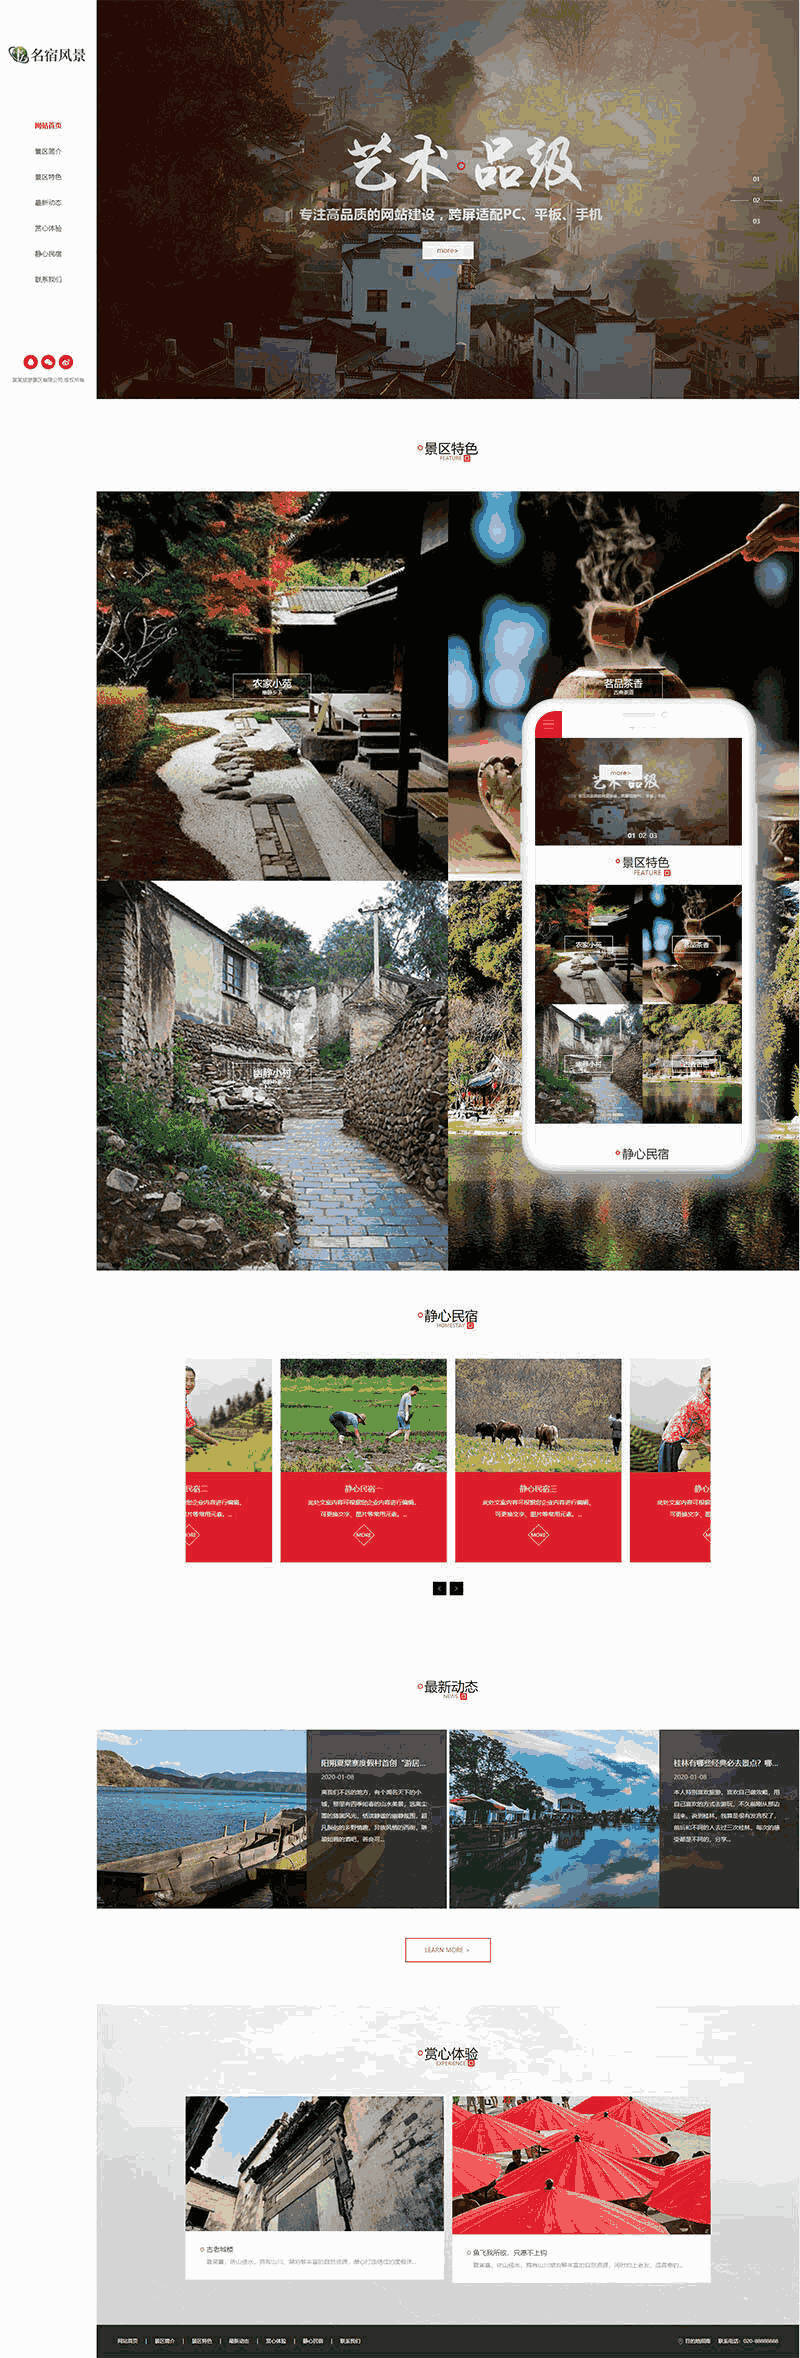 民宿景区旅游网站WordPress模板含手机站演示图